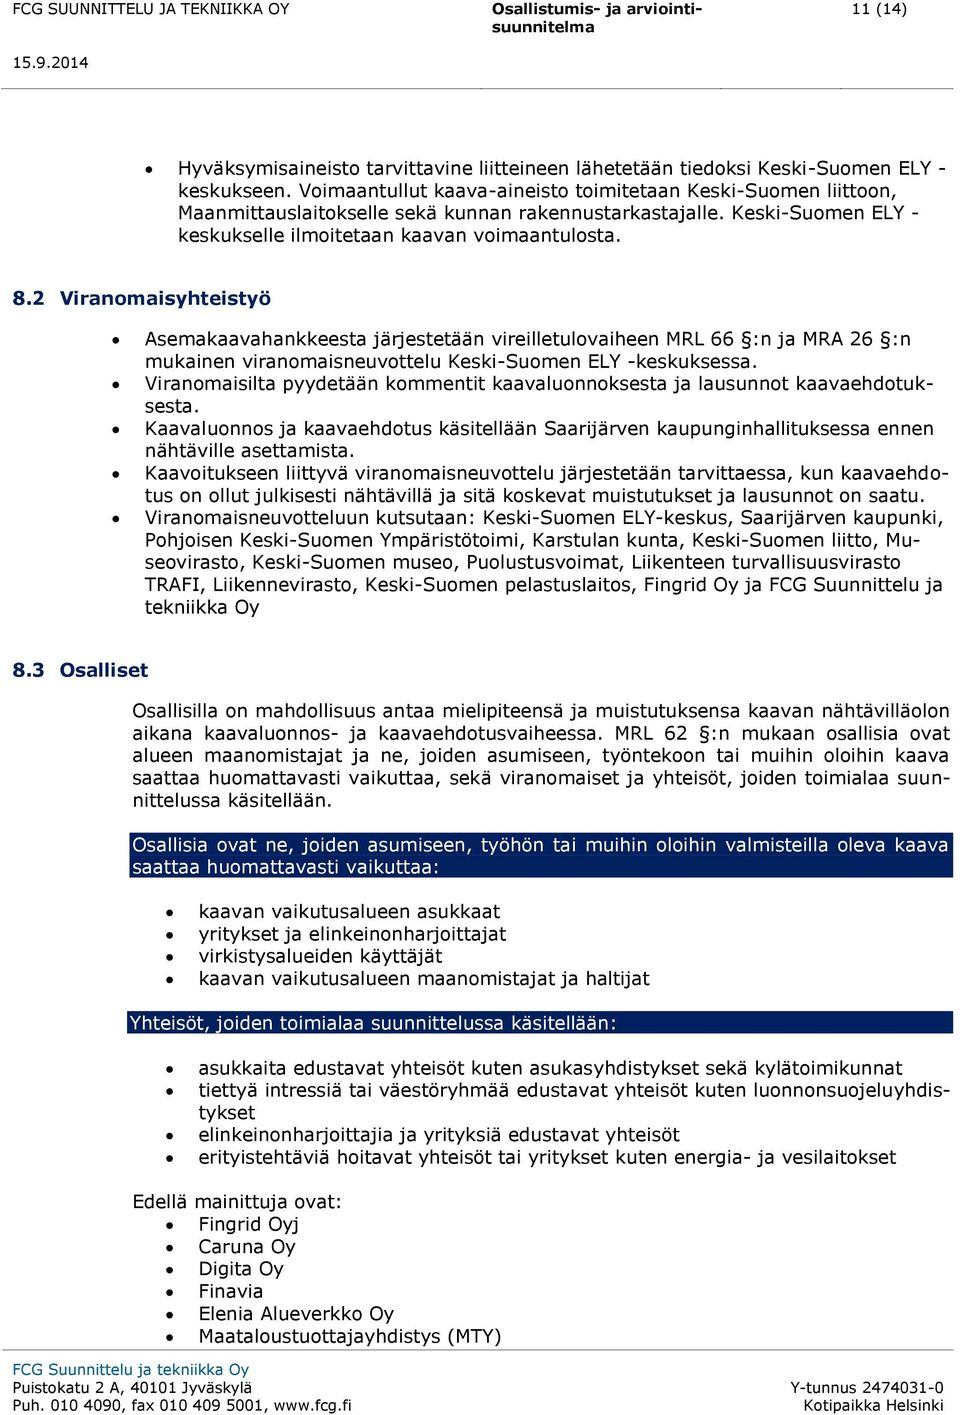 2 Viranomaisyhteistyö Asemakaavahankkeesta järjestetään vireilletulovaiheen MRL 66 :n ja MRA 26 :n mukainen viranomaisneuvottelu Keski-Suomen ELY -keskuksessa.